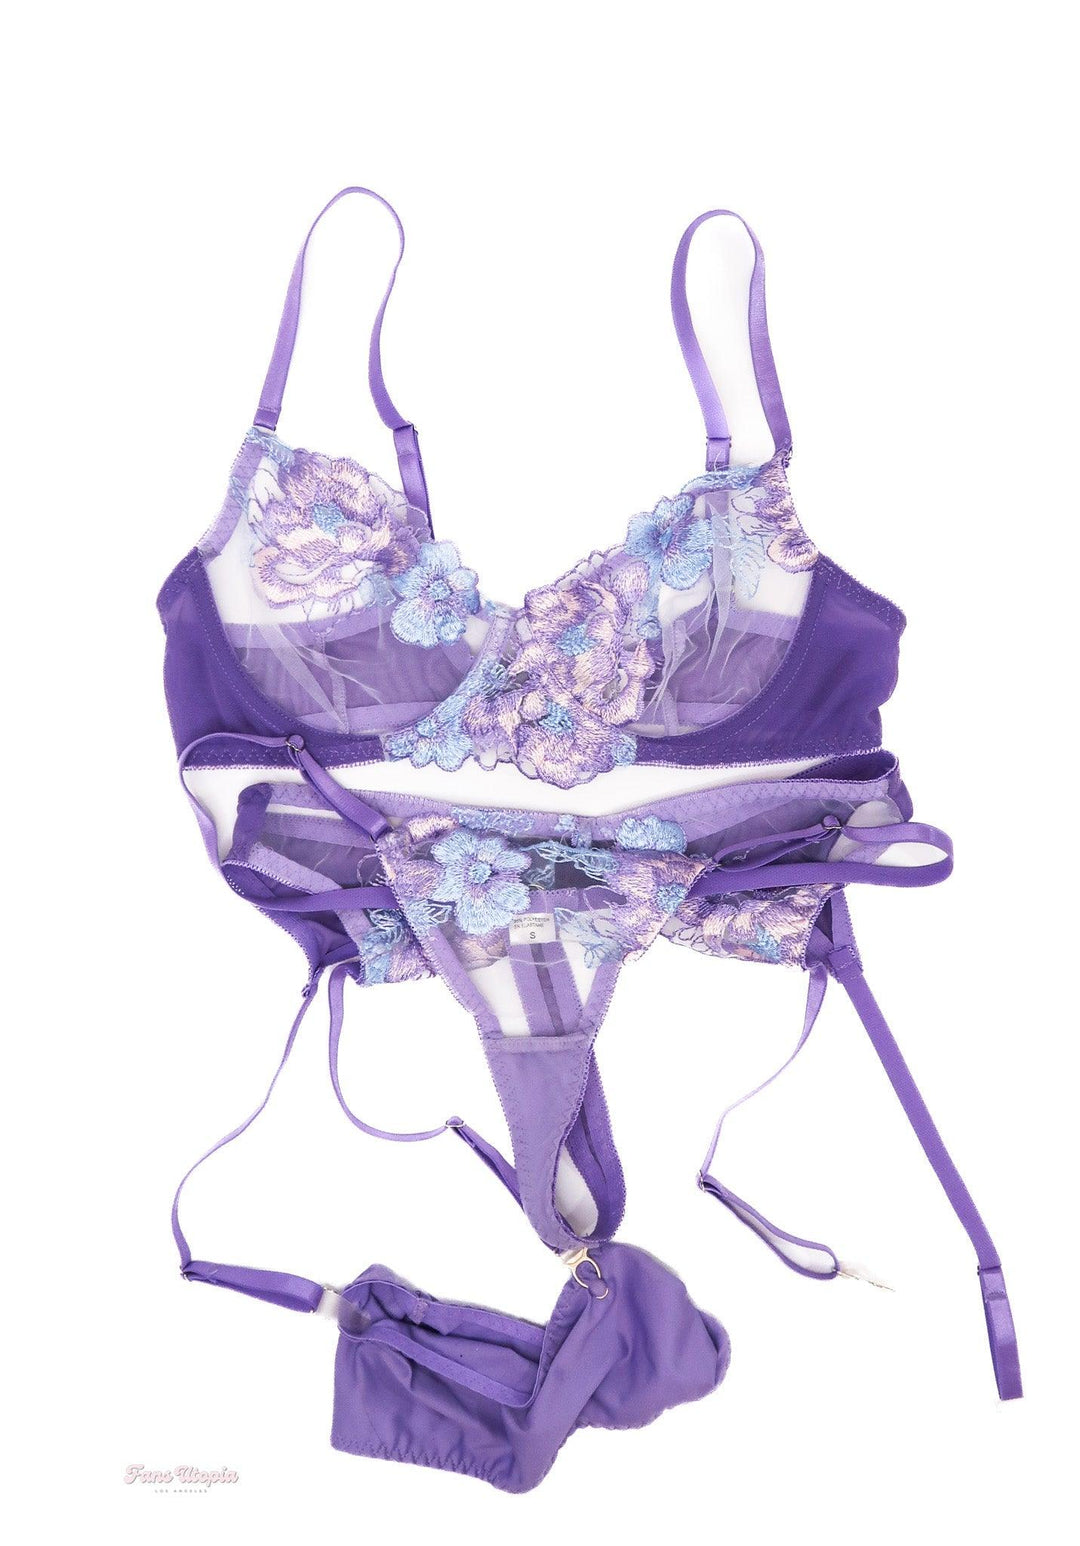 Lexi Lore Purple Floral Lingerie Set - FANS UTOPIA